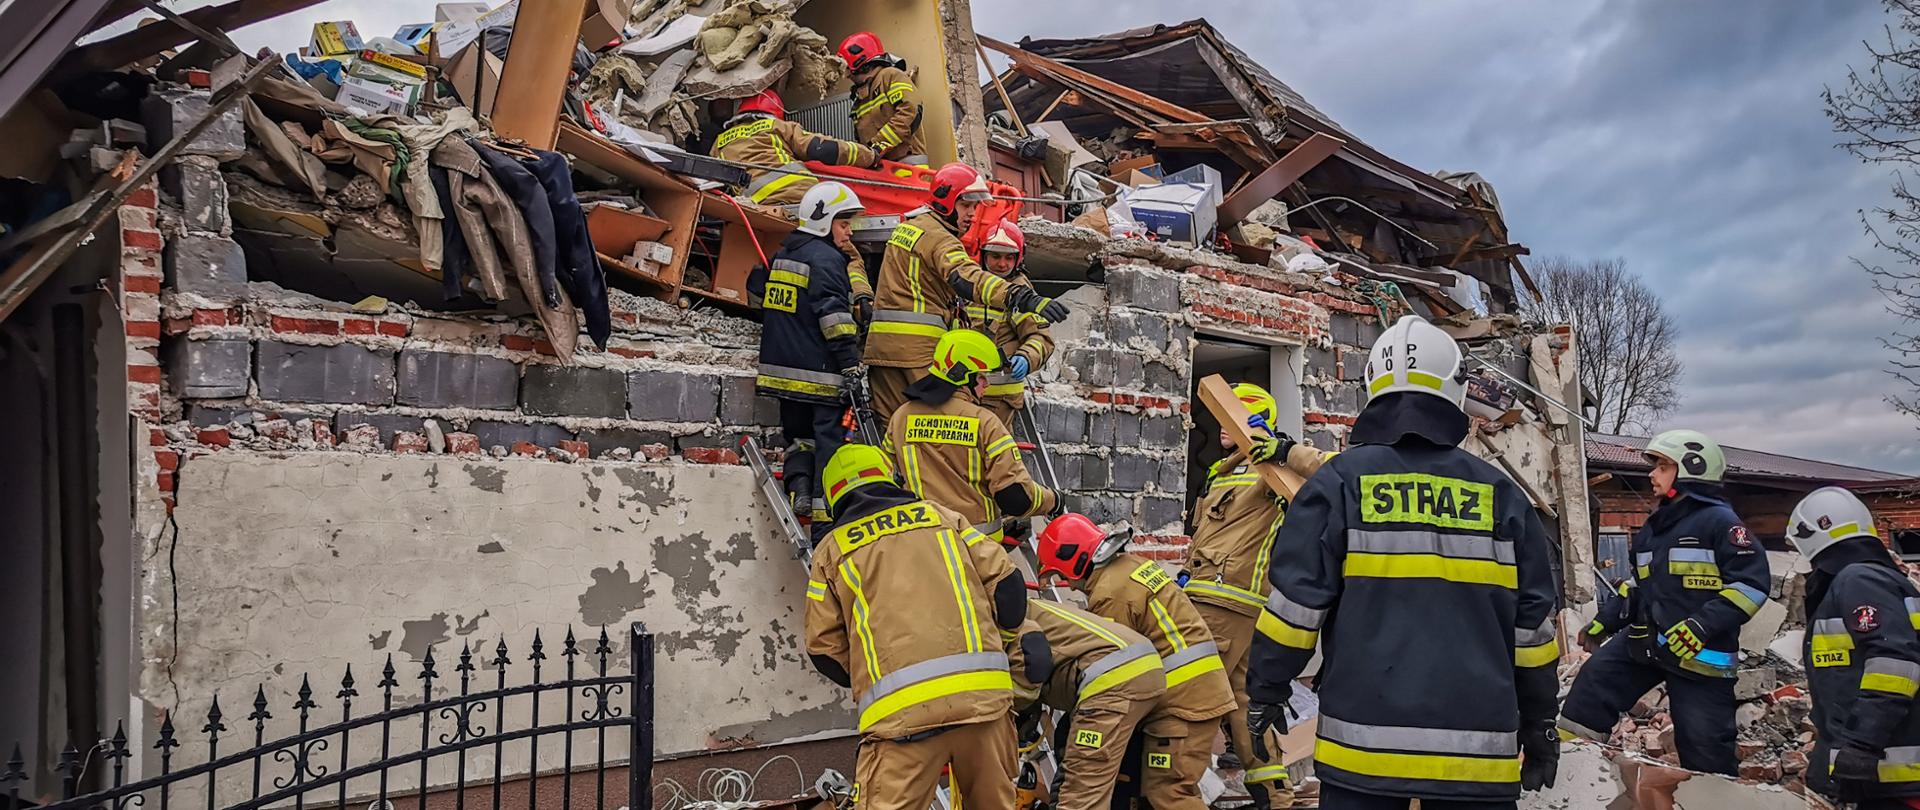 Na zdjęciu strażacy w akcji w ubraniach koloru musztardowego na drabinach przystawnych na tle budynku zawalonego w wyniku wybuchu gazu, wokół porozrzucane elementy budynku, dach wyrzucony poza budynek.